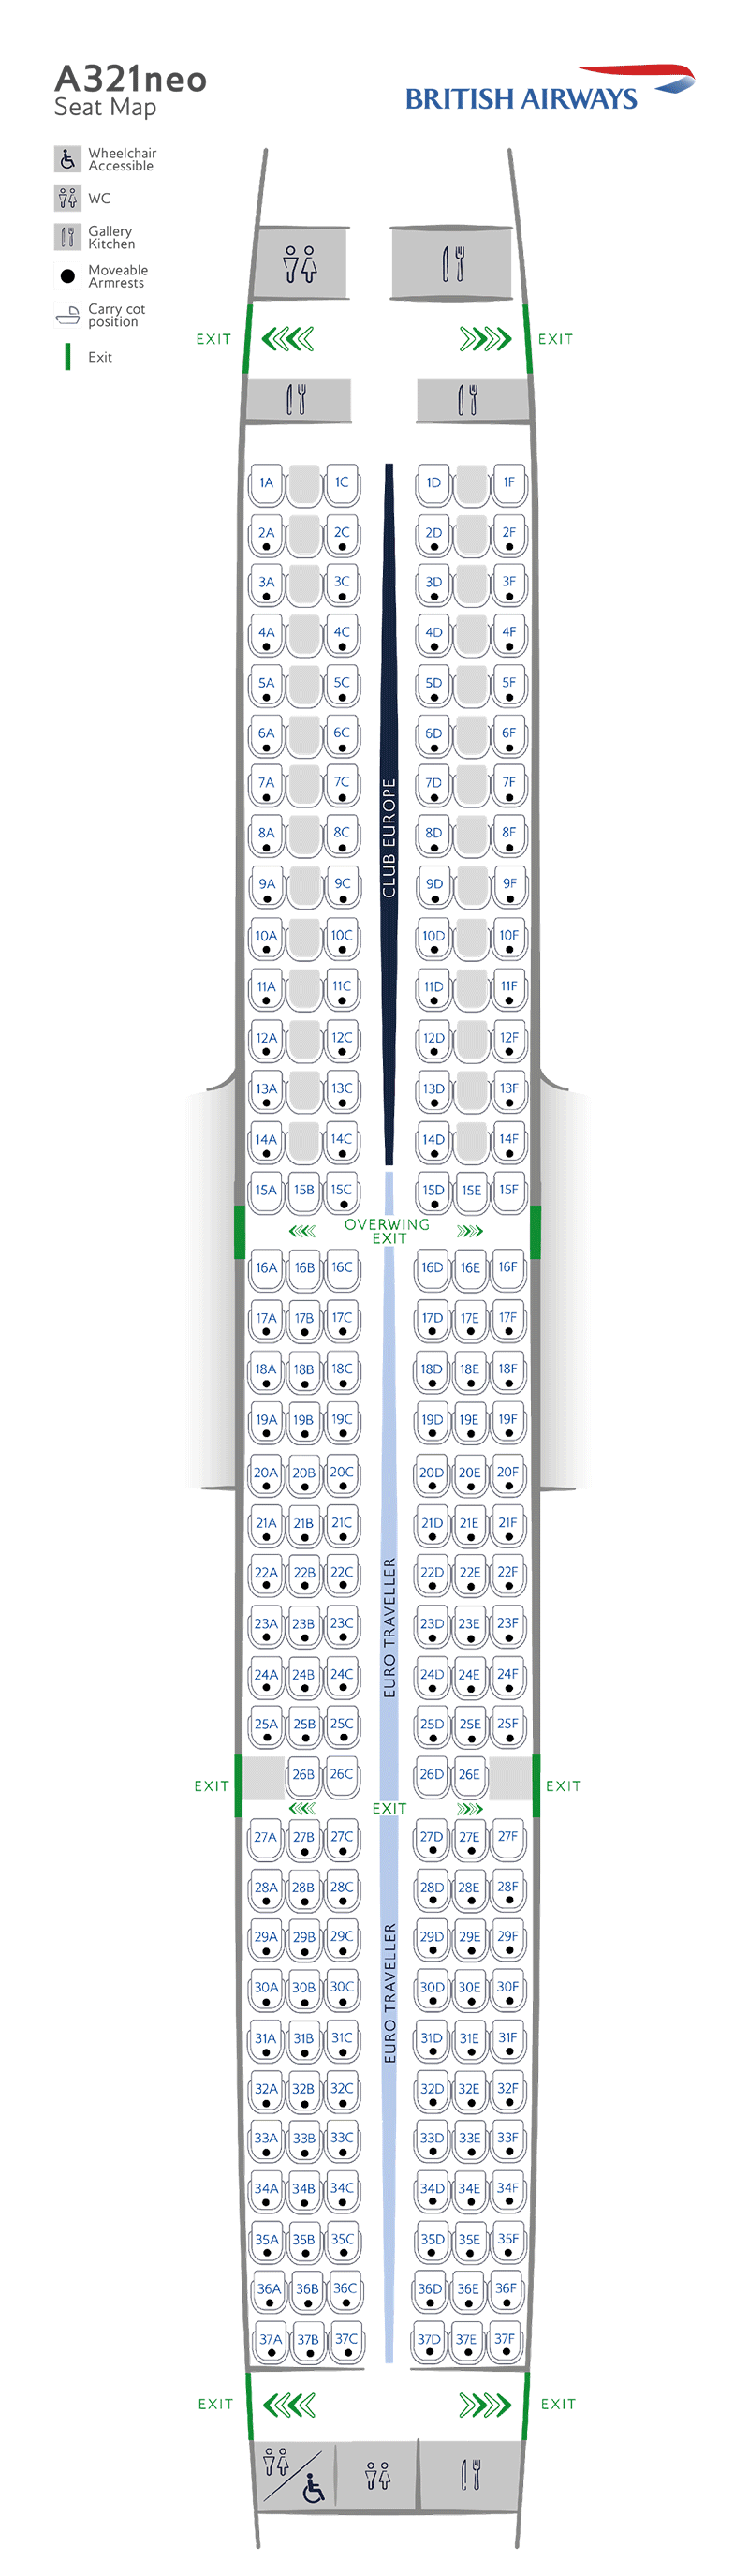 A321neo seatmap